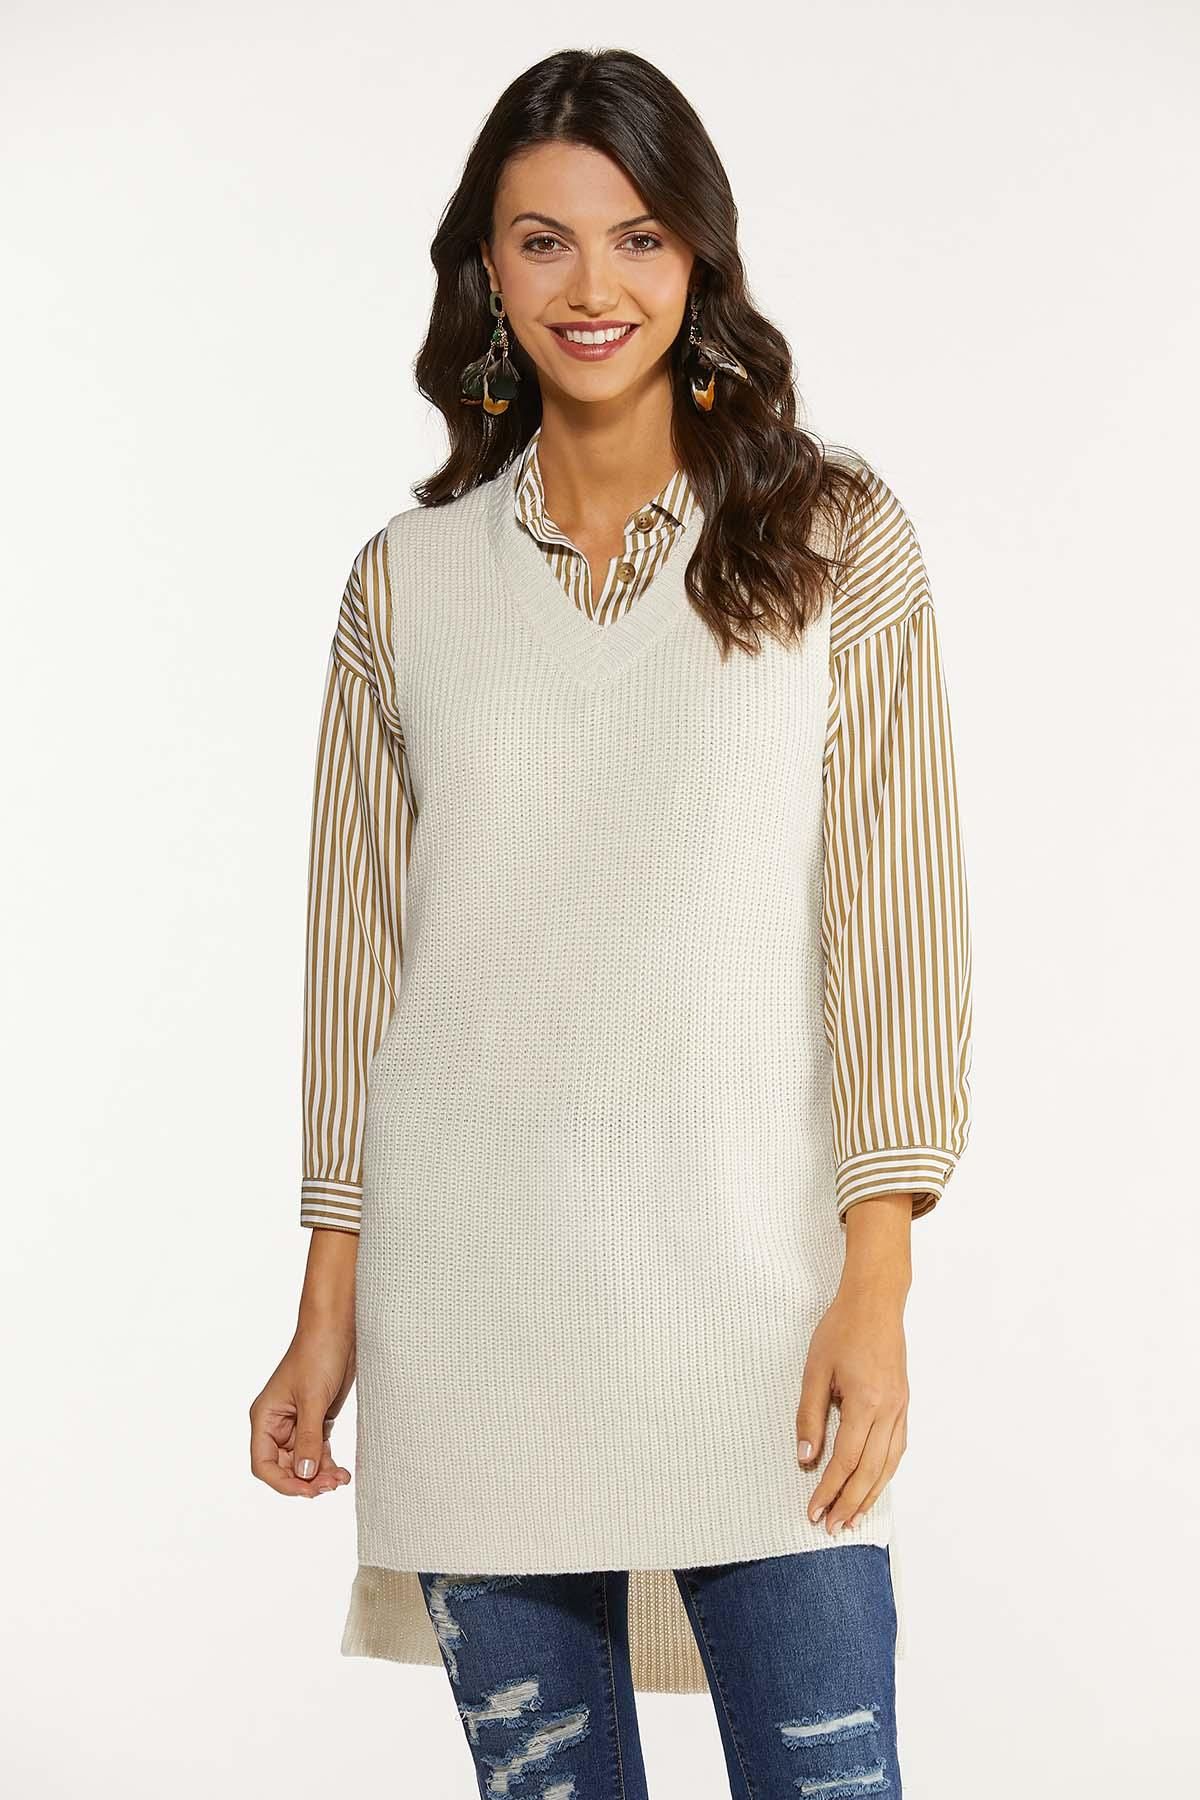 Plus Size Pullover Sweater Vest | Cato Fashions